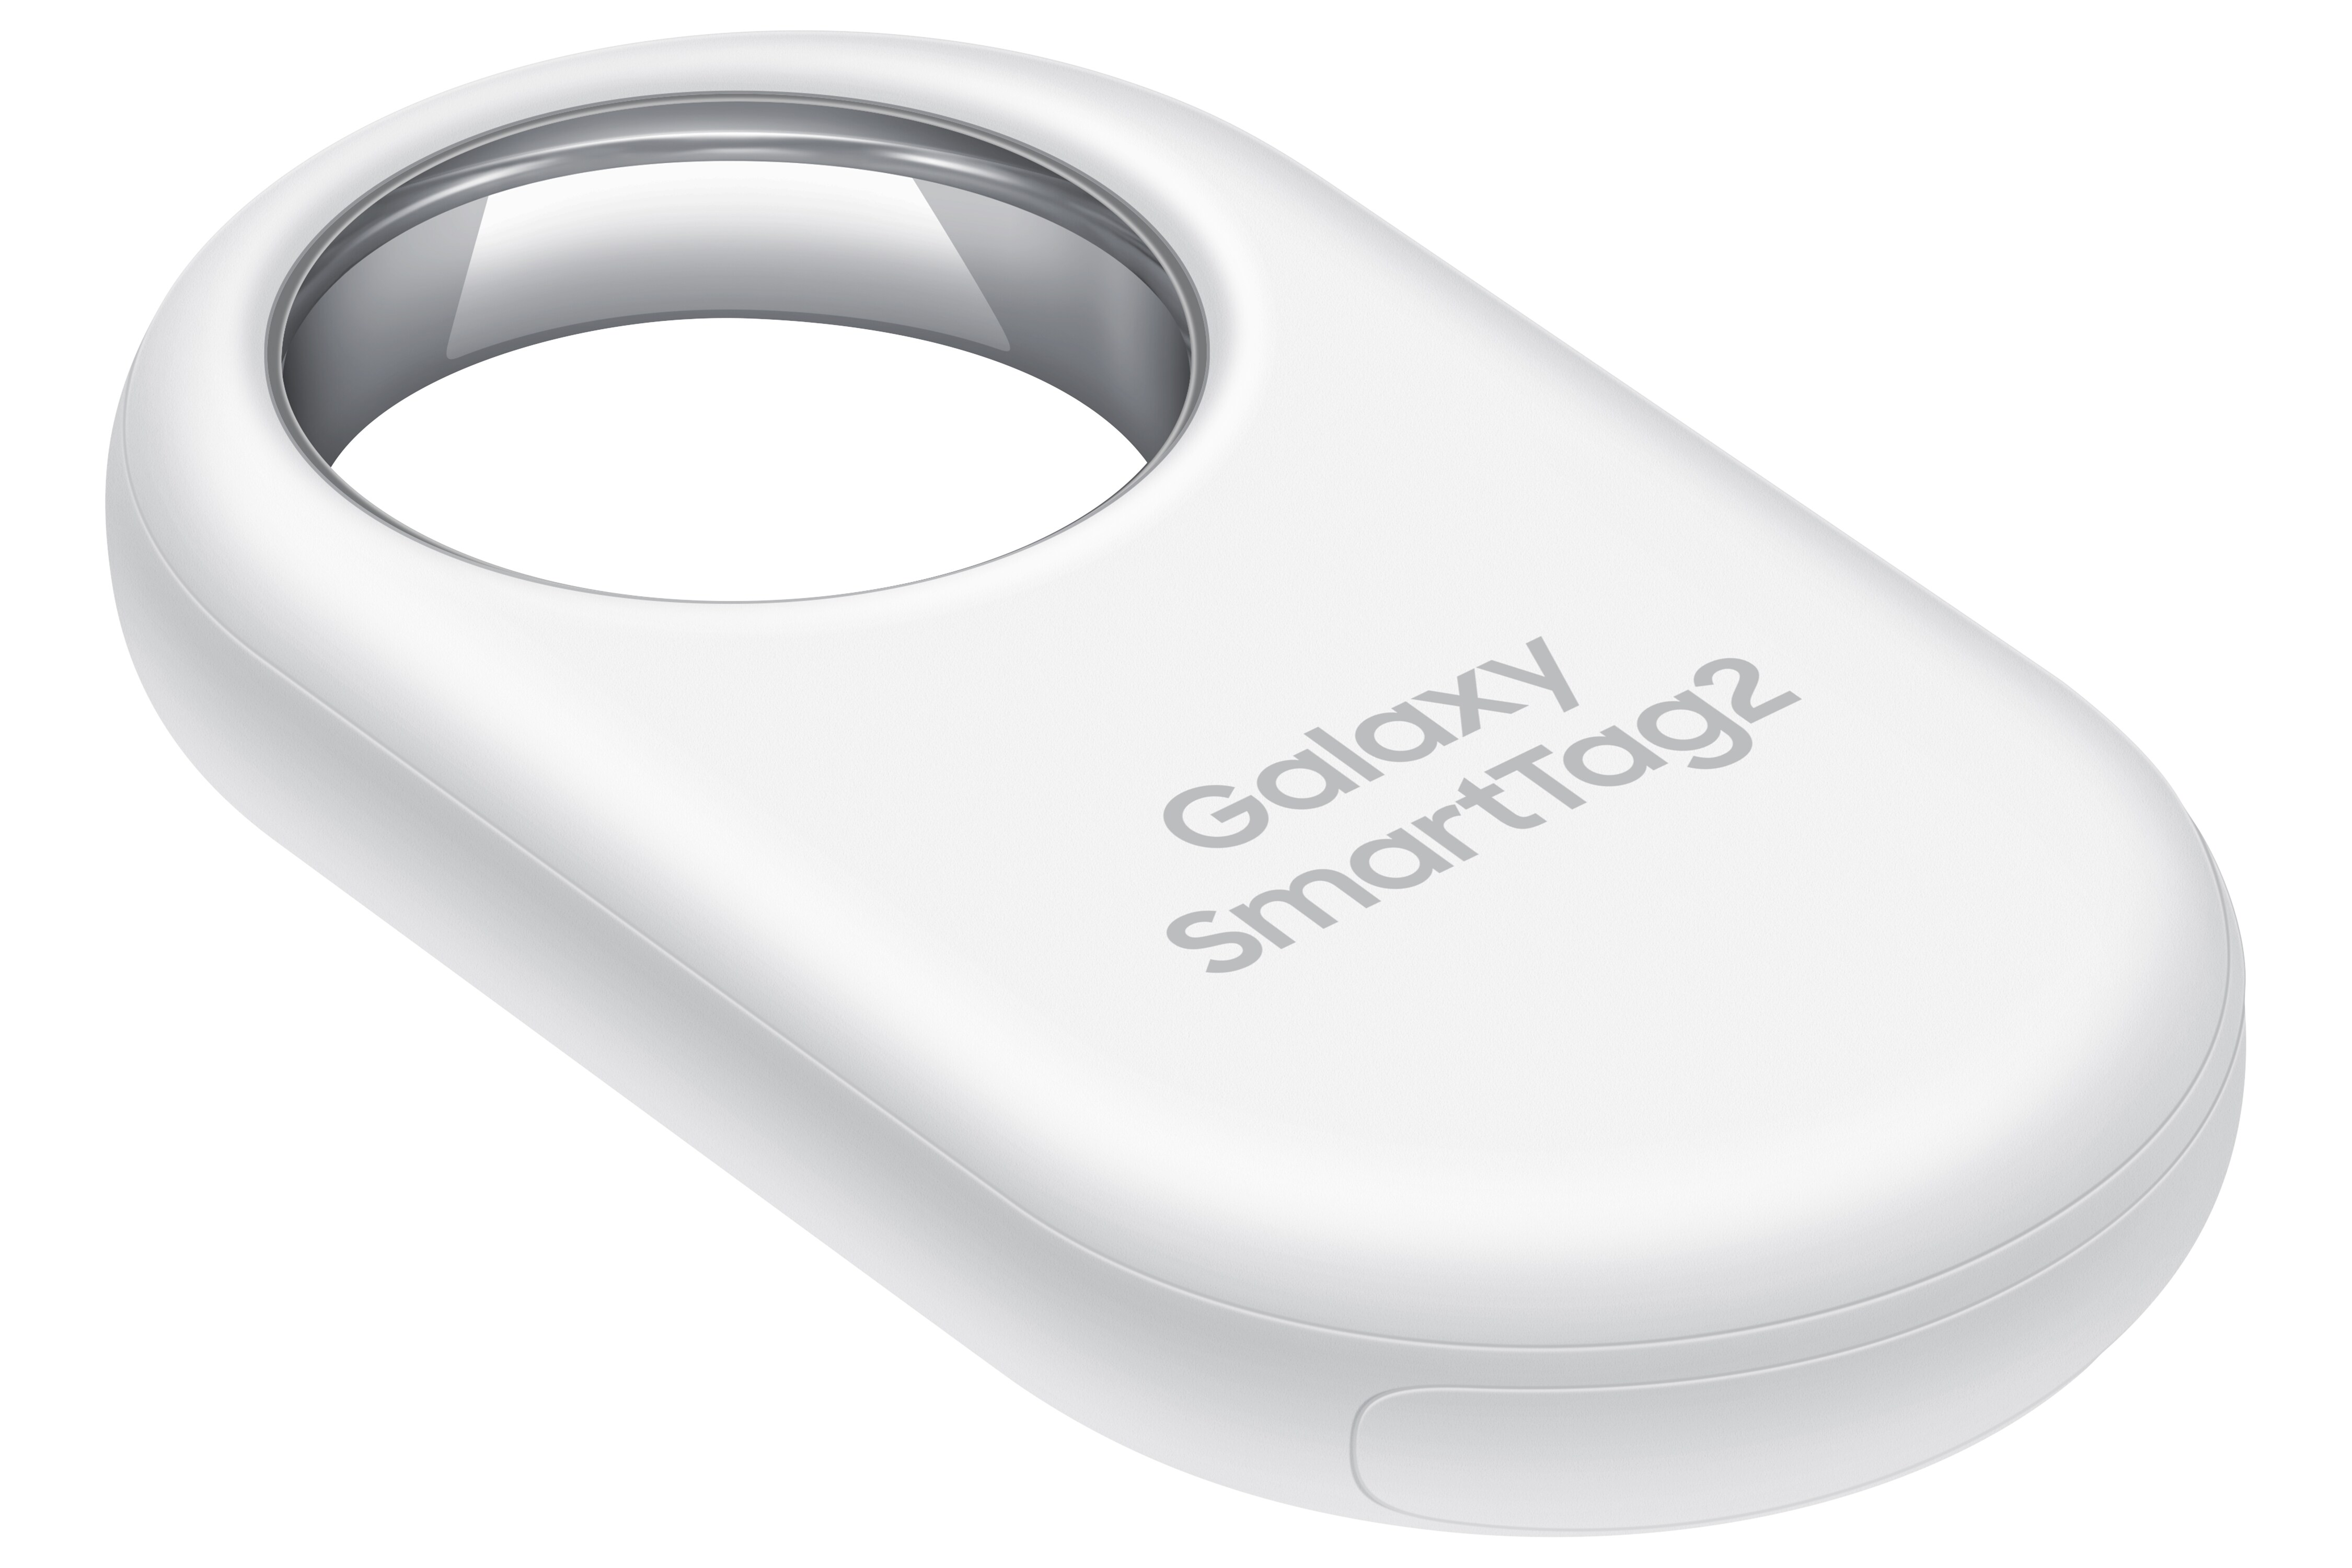 Samsung SmartTag 2 EI-T5600, white ++ Cyberport